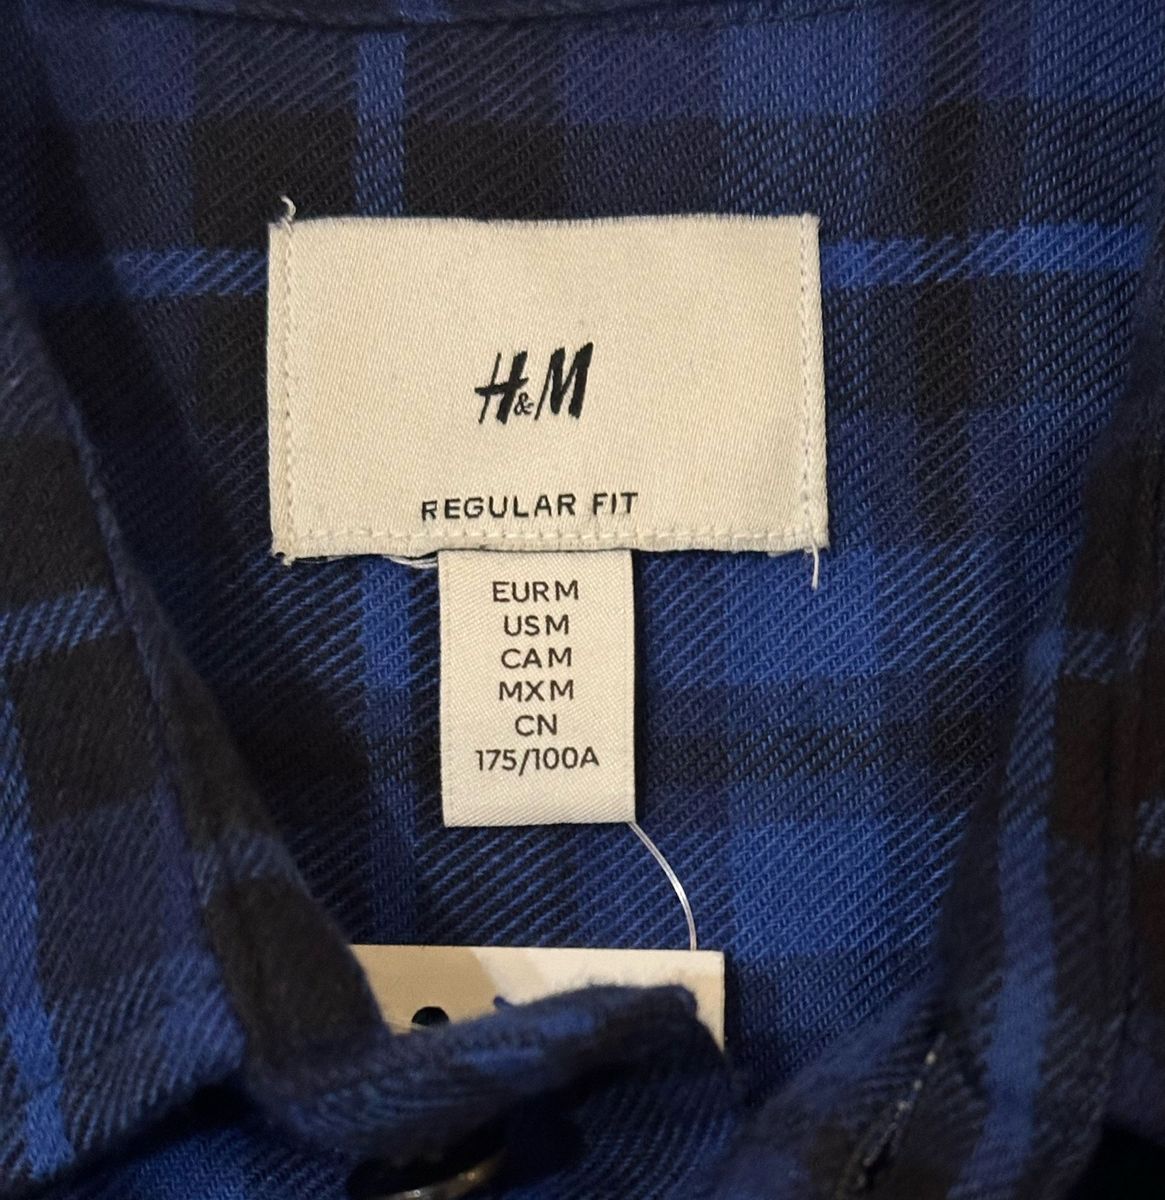 新品 H&M フランネル チェックシャツ ブルー M